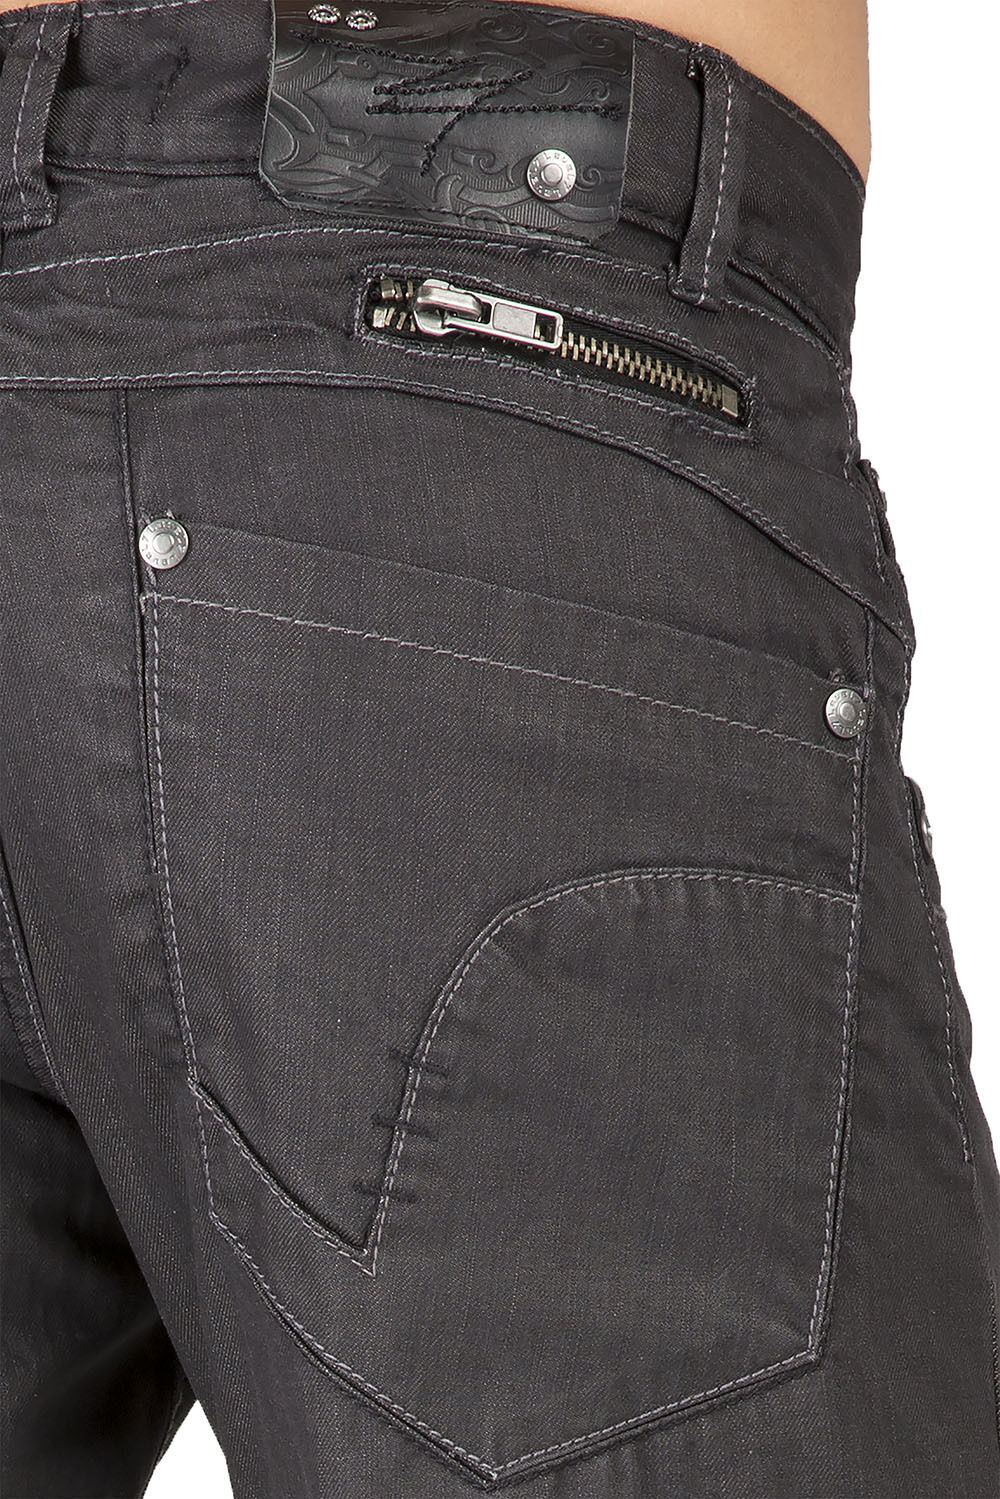 Level 7 Men's Zipper Pocket Relaxed Straight leg Coated Black Jeans ...